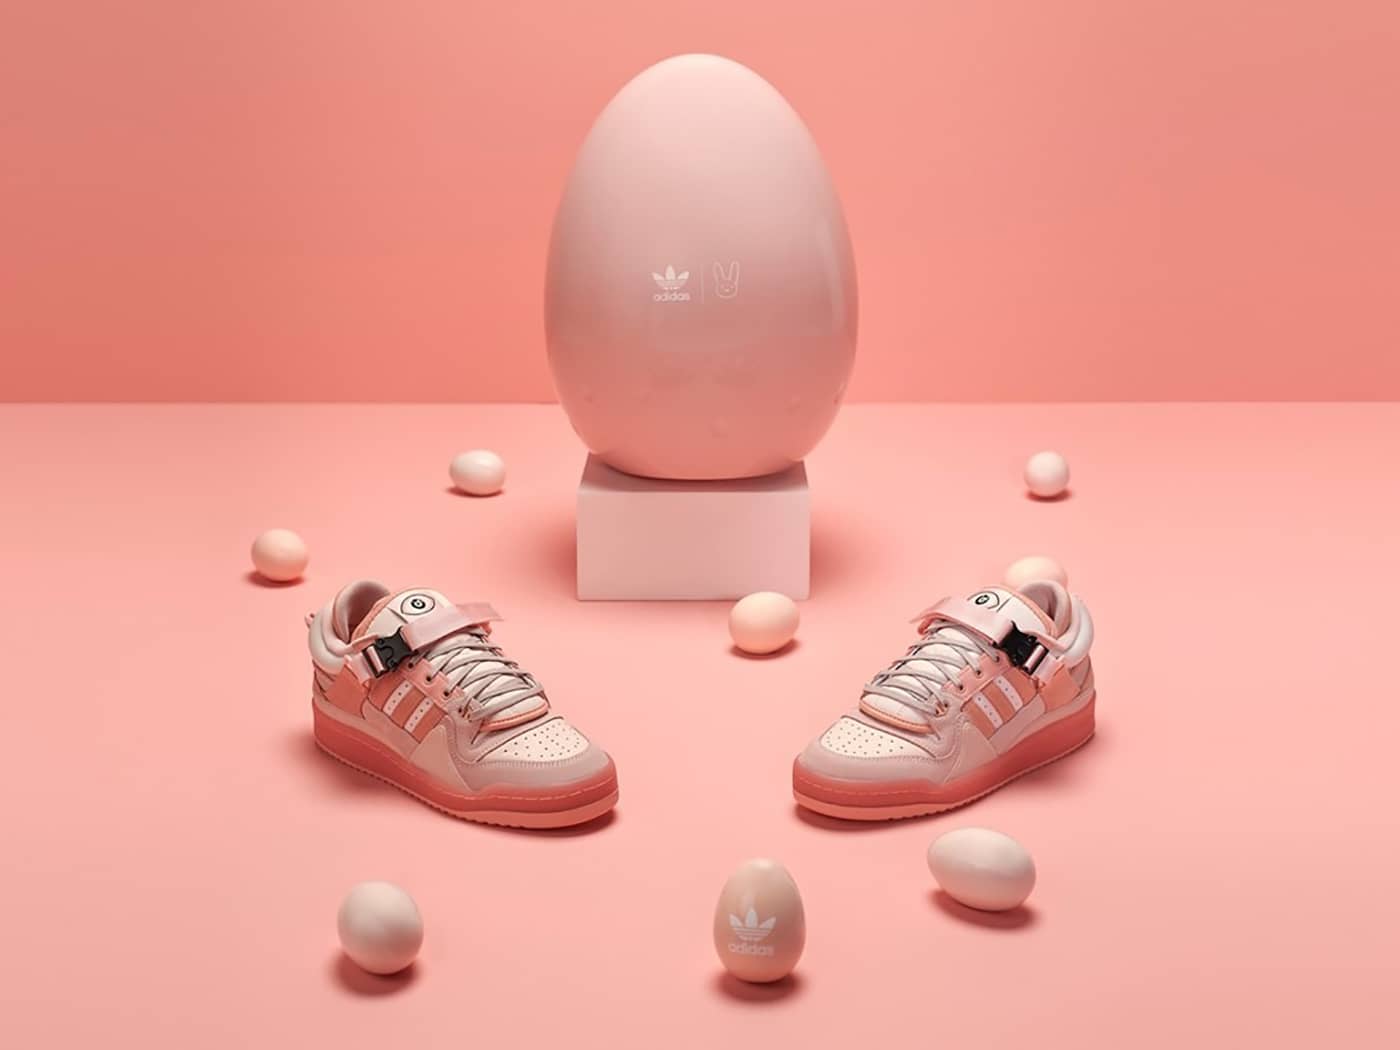 배드 버니 x 아디다스 포럼 이스터 에그(Bad Bunny x adidas Forum Low Easter Egg)